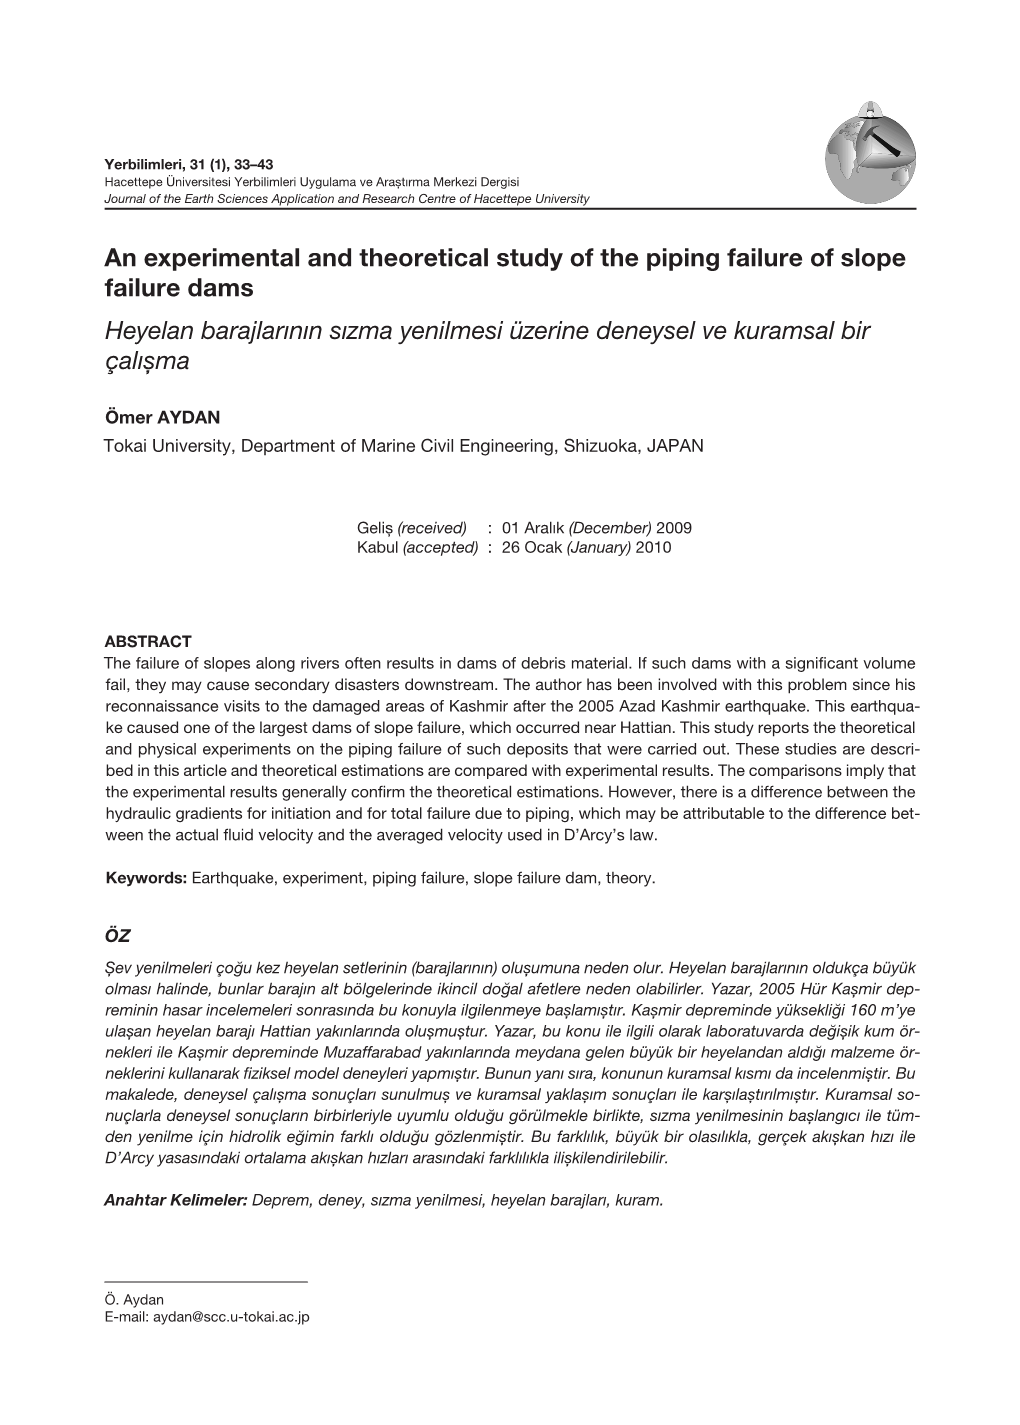 An Experimental and Theoretical Study of the Piping Failure of Slope Failure Dams Heyelan Barajlarının Sızma Yenilmesi Üzerine Deneysel Ve Kuramsal Bir Çalışma